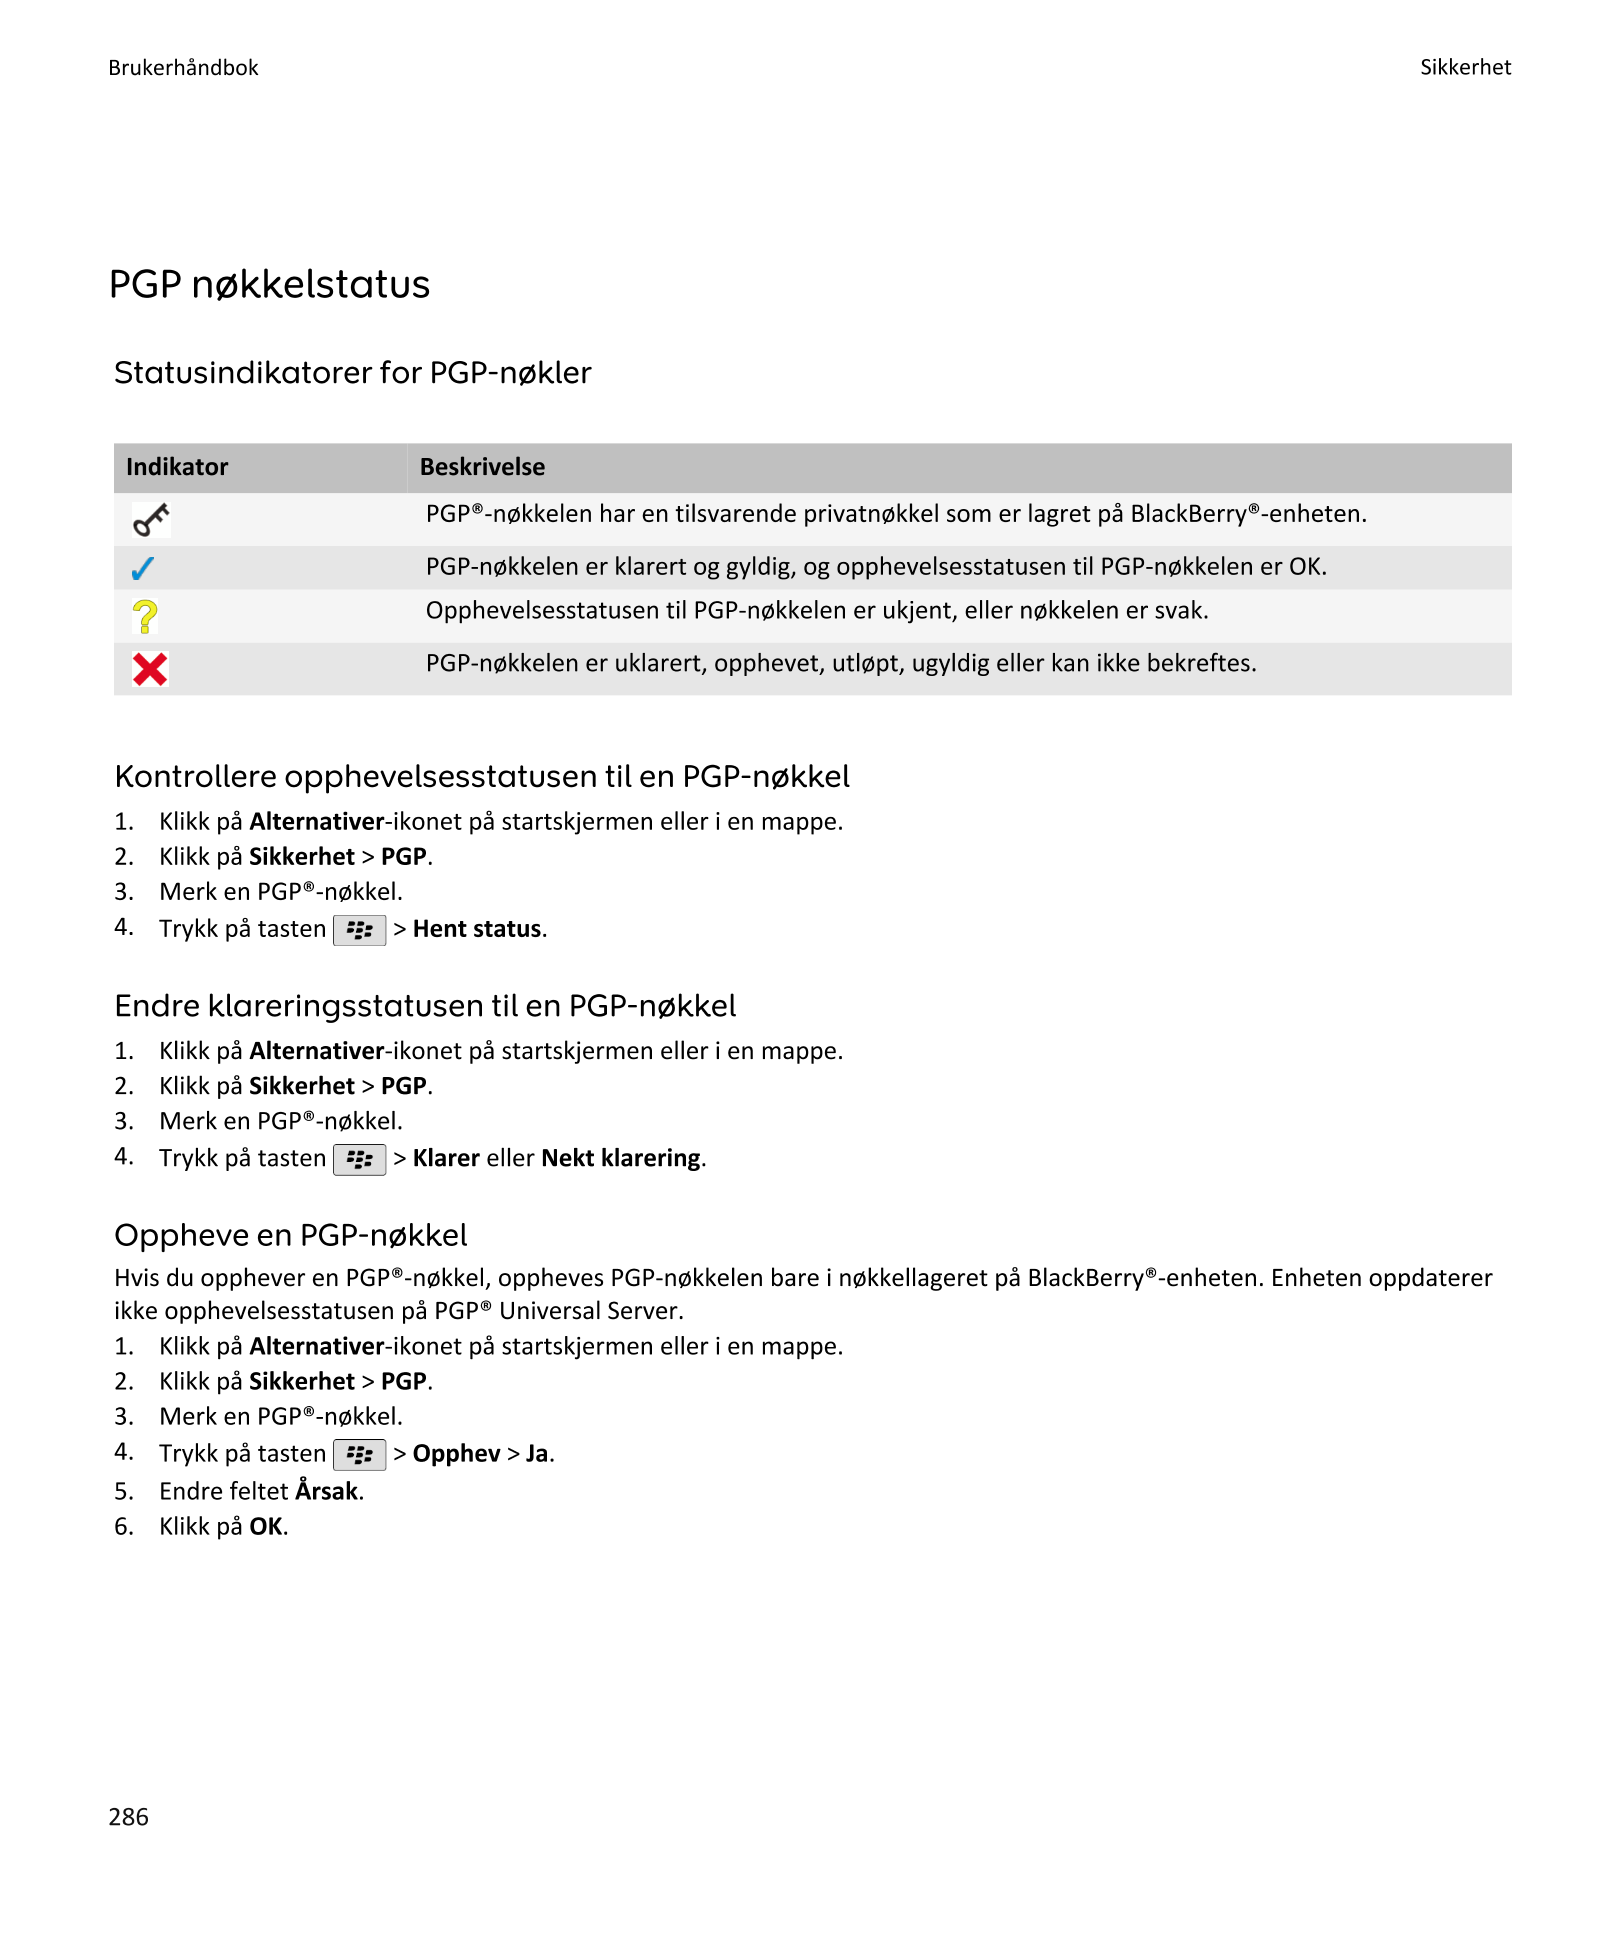 Brukerhåndbok Sikkerhet
PGP nøkkelstatus
Statusindikatorer for PGP-nøkler
Indikator Beskrivelse
PGP®-nøkkelen har en tilsvarende